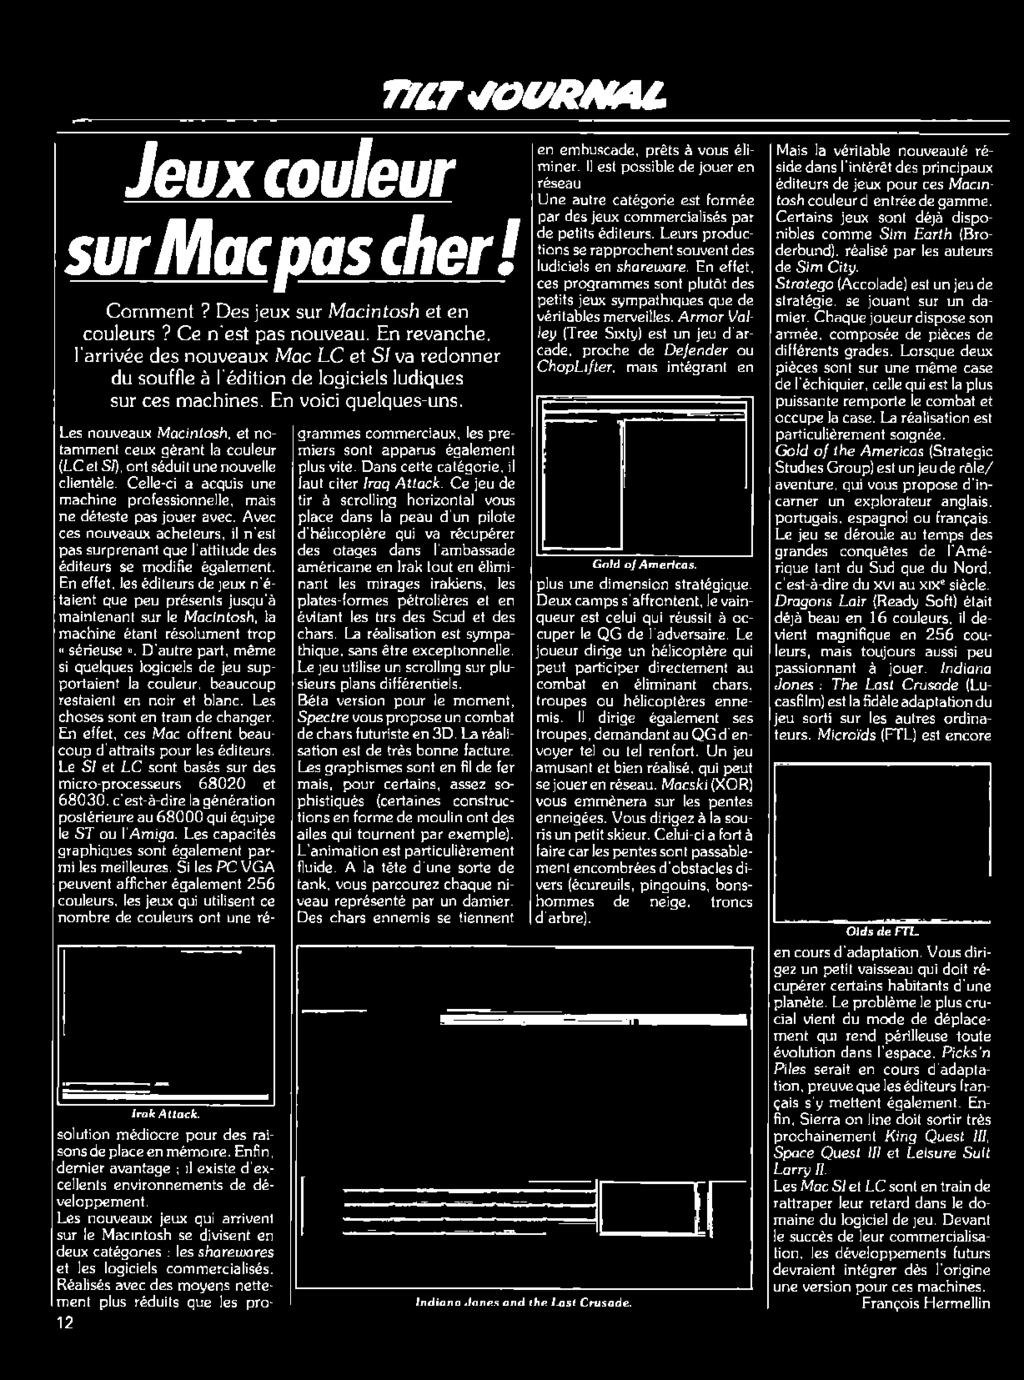 En effet, les éditeurs de jeux n'étaient que peu présents jusqu'à maintenant sur le Macintosh, la machine étant résolument trop «sérieuse».